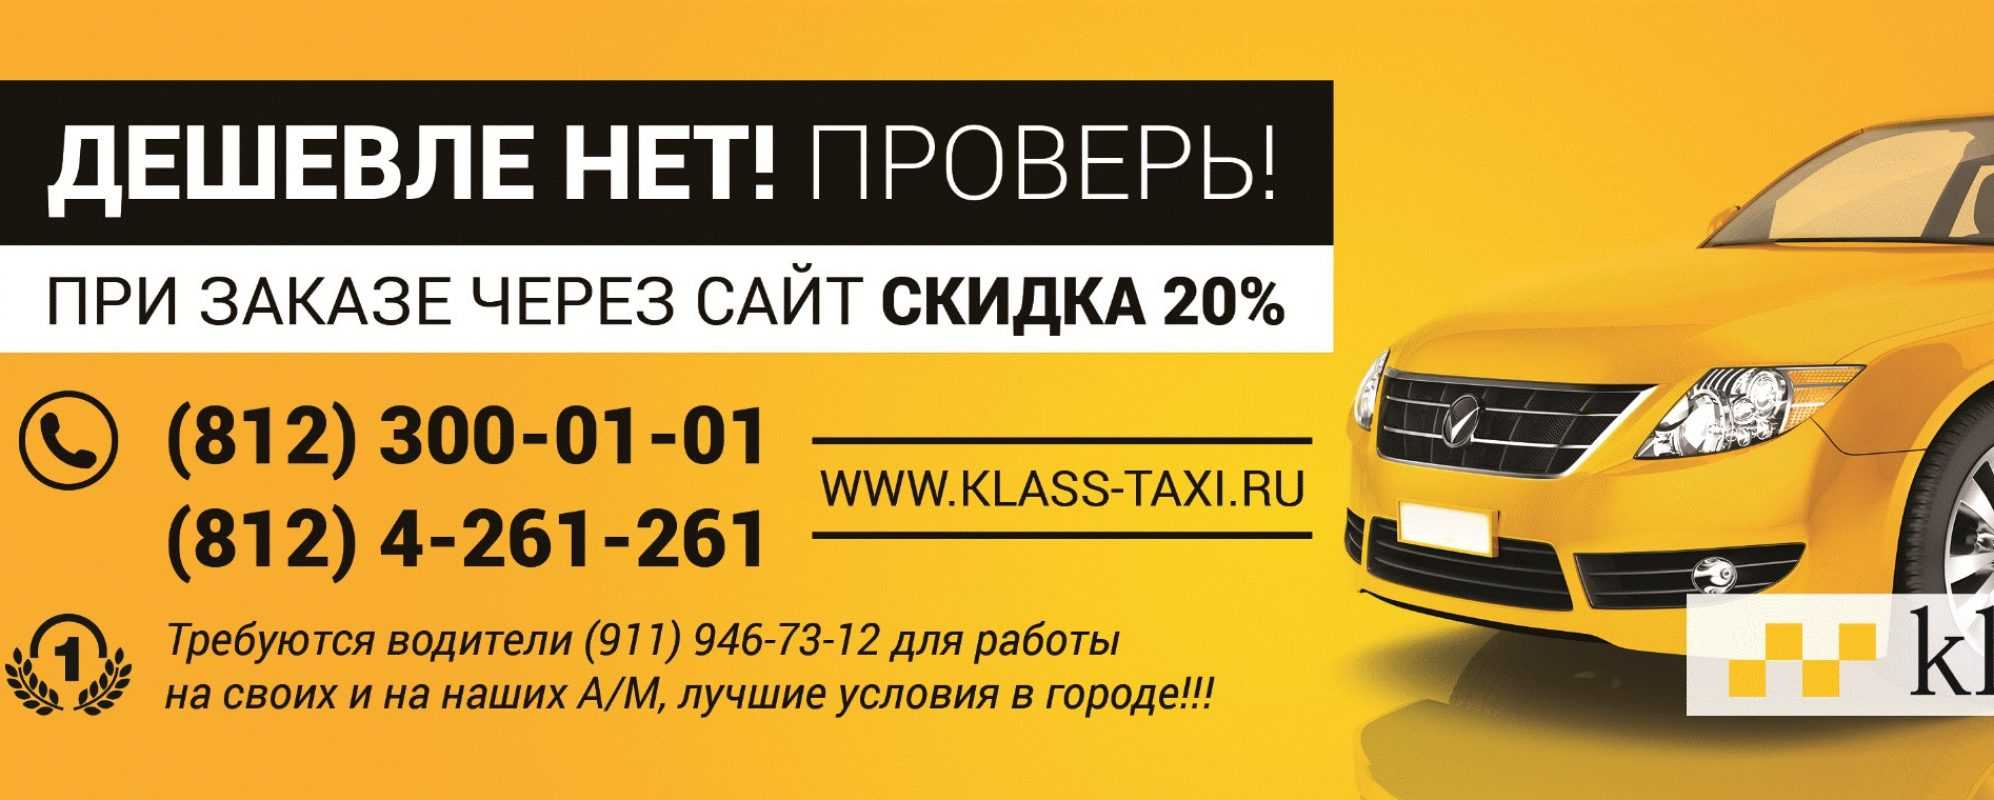 Вызвать такси екатеринбург телефон. Самое дешёвое такси. Вызов такси. Самое дешевое такси в Москве. Самое дешевое такси номер.